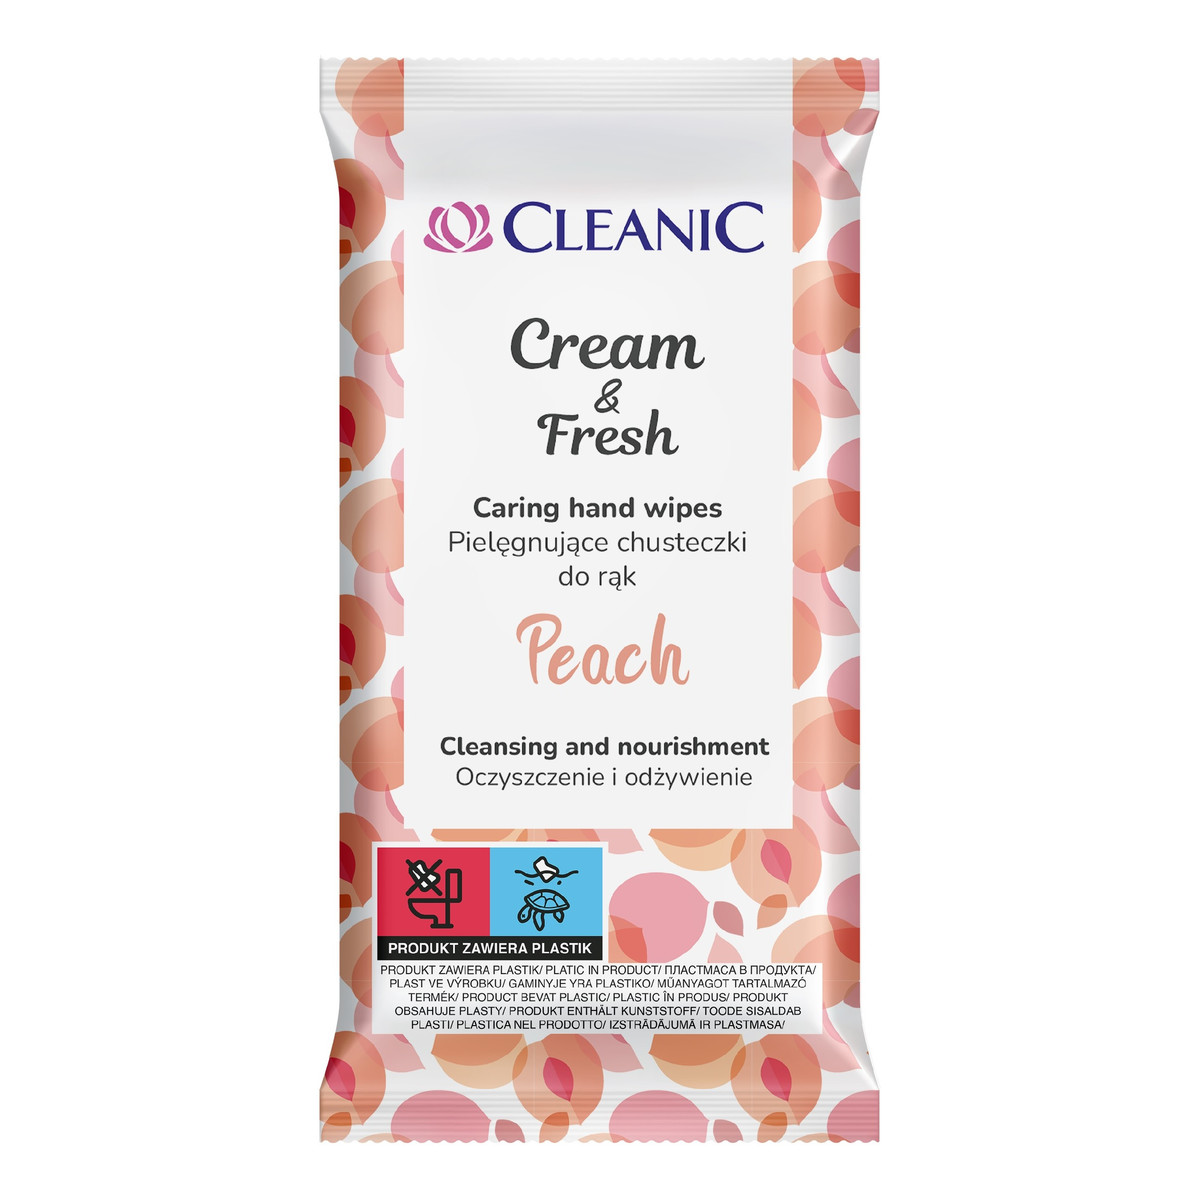 Cleanic pielęgnujące chusteczki do rąk cream & fresh-peach 1op-15szt